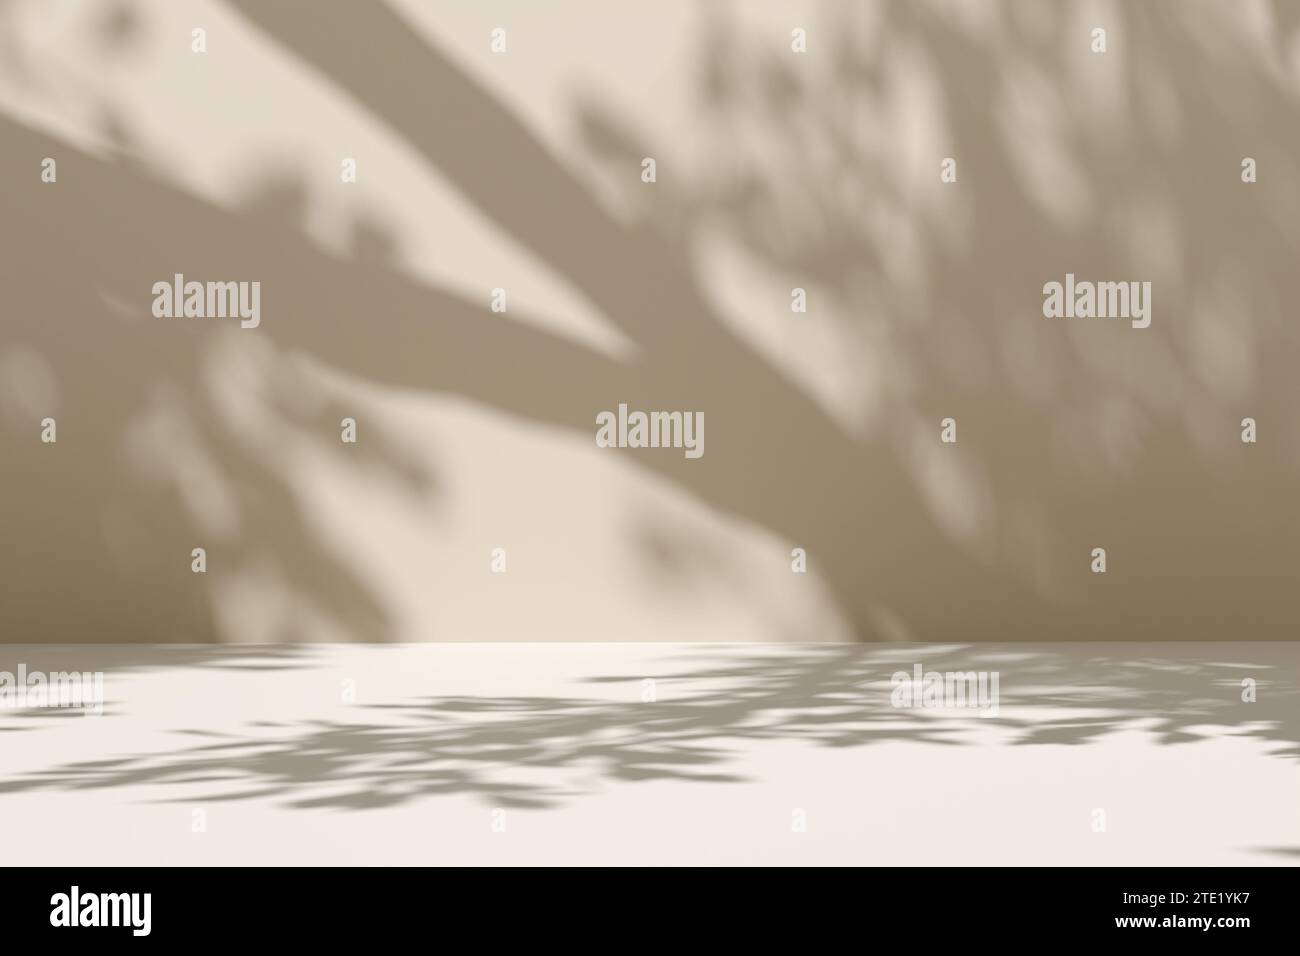 Fond de scène beige vide avec des ombres d'arbre et de feuille sur le mur. Ambiance extérieure ensoleillée d'été avec ombre de feuille sur le mur. Rendu 3D. Banque D'Images